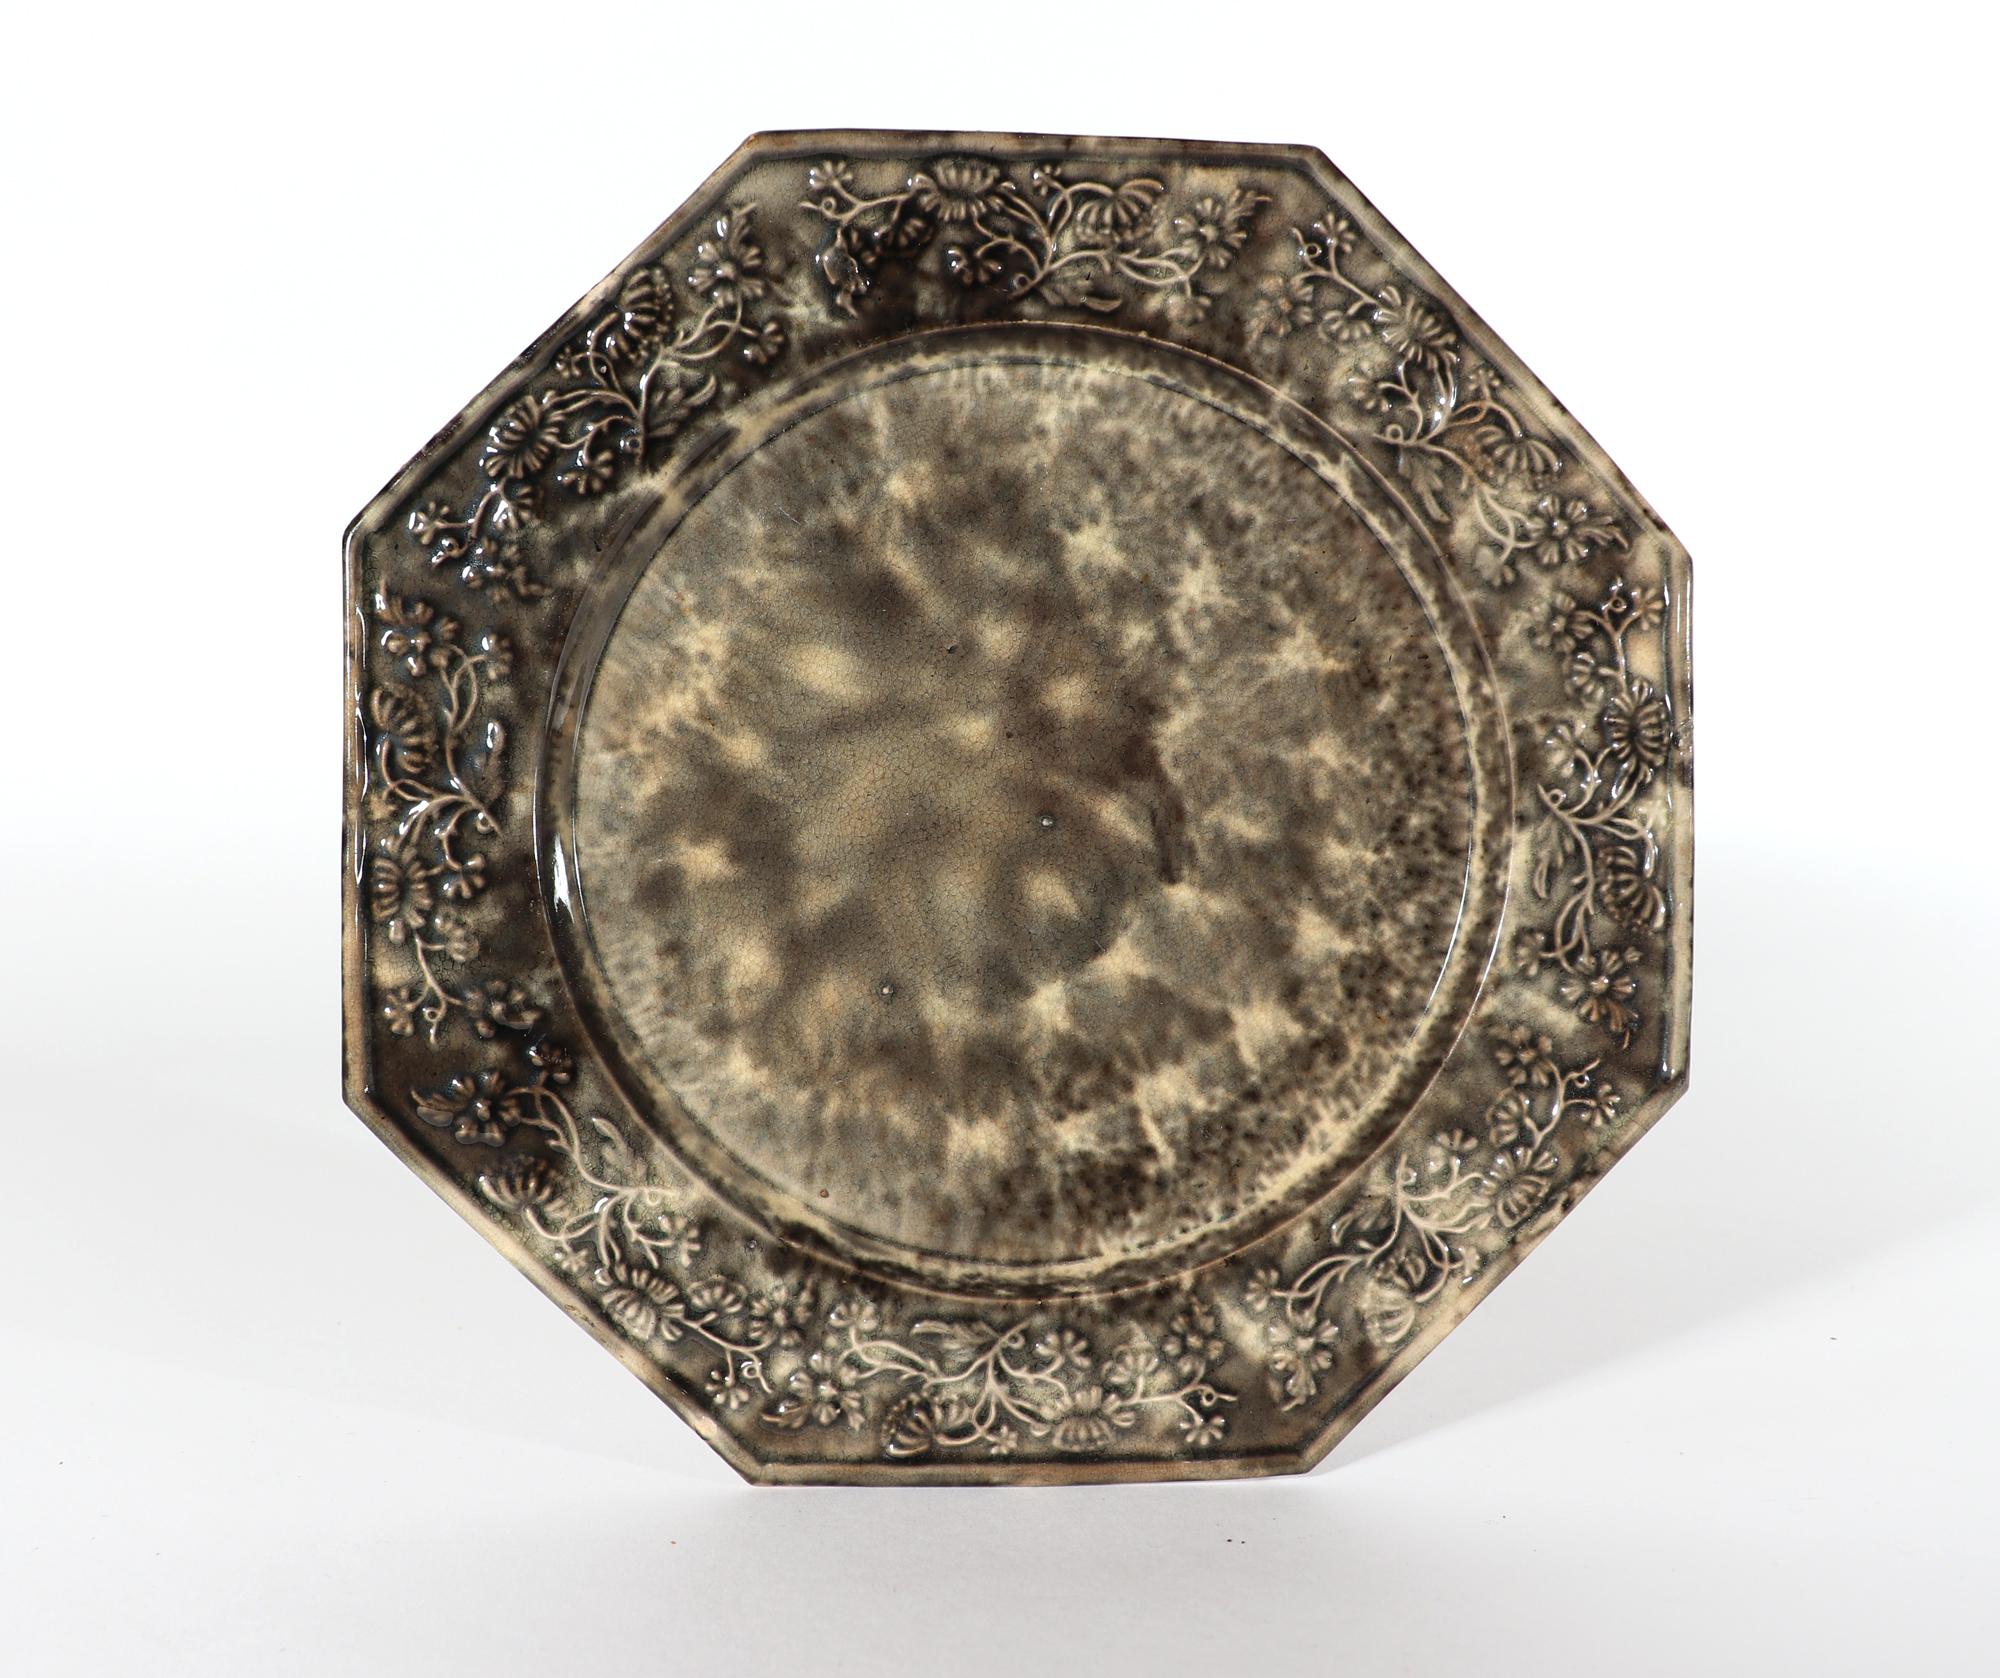 Assiette en écaille de tortue grise de type Whieldon en faïence anglaise,
Circa 1765-75

La plaque de forme octogonale est recouverte à l'avant et à l'arrière d'un très joli motif d'écaille de tortue grise.  Le bord est surélevé et la bordure